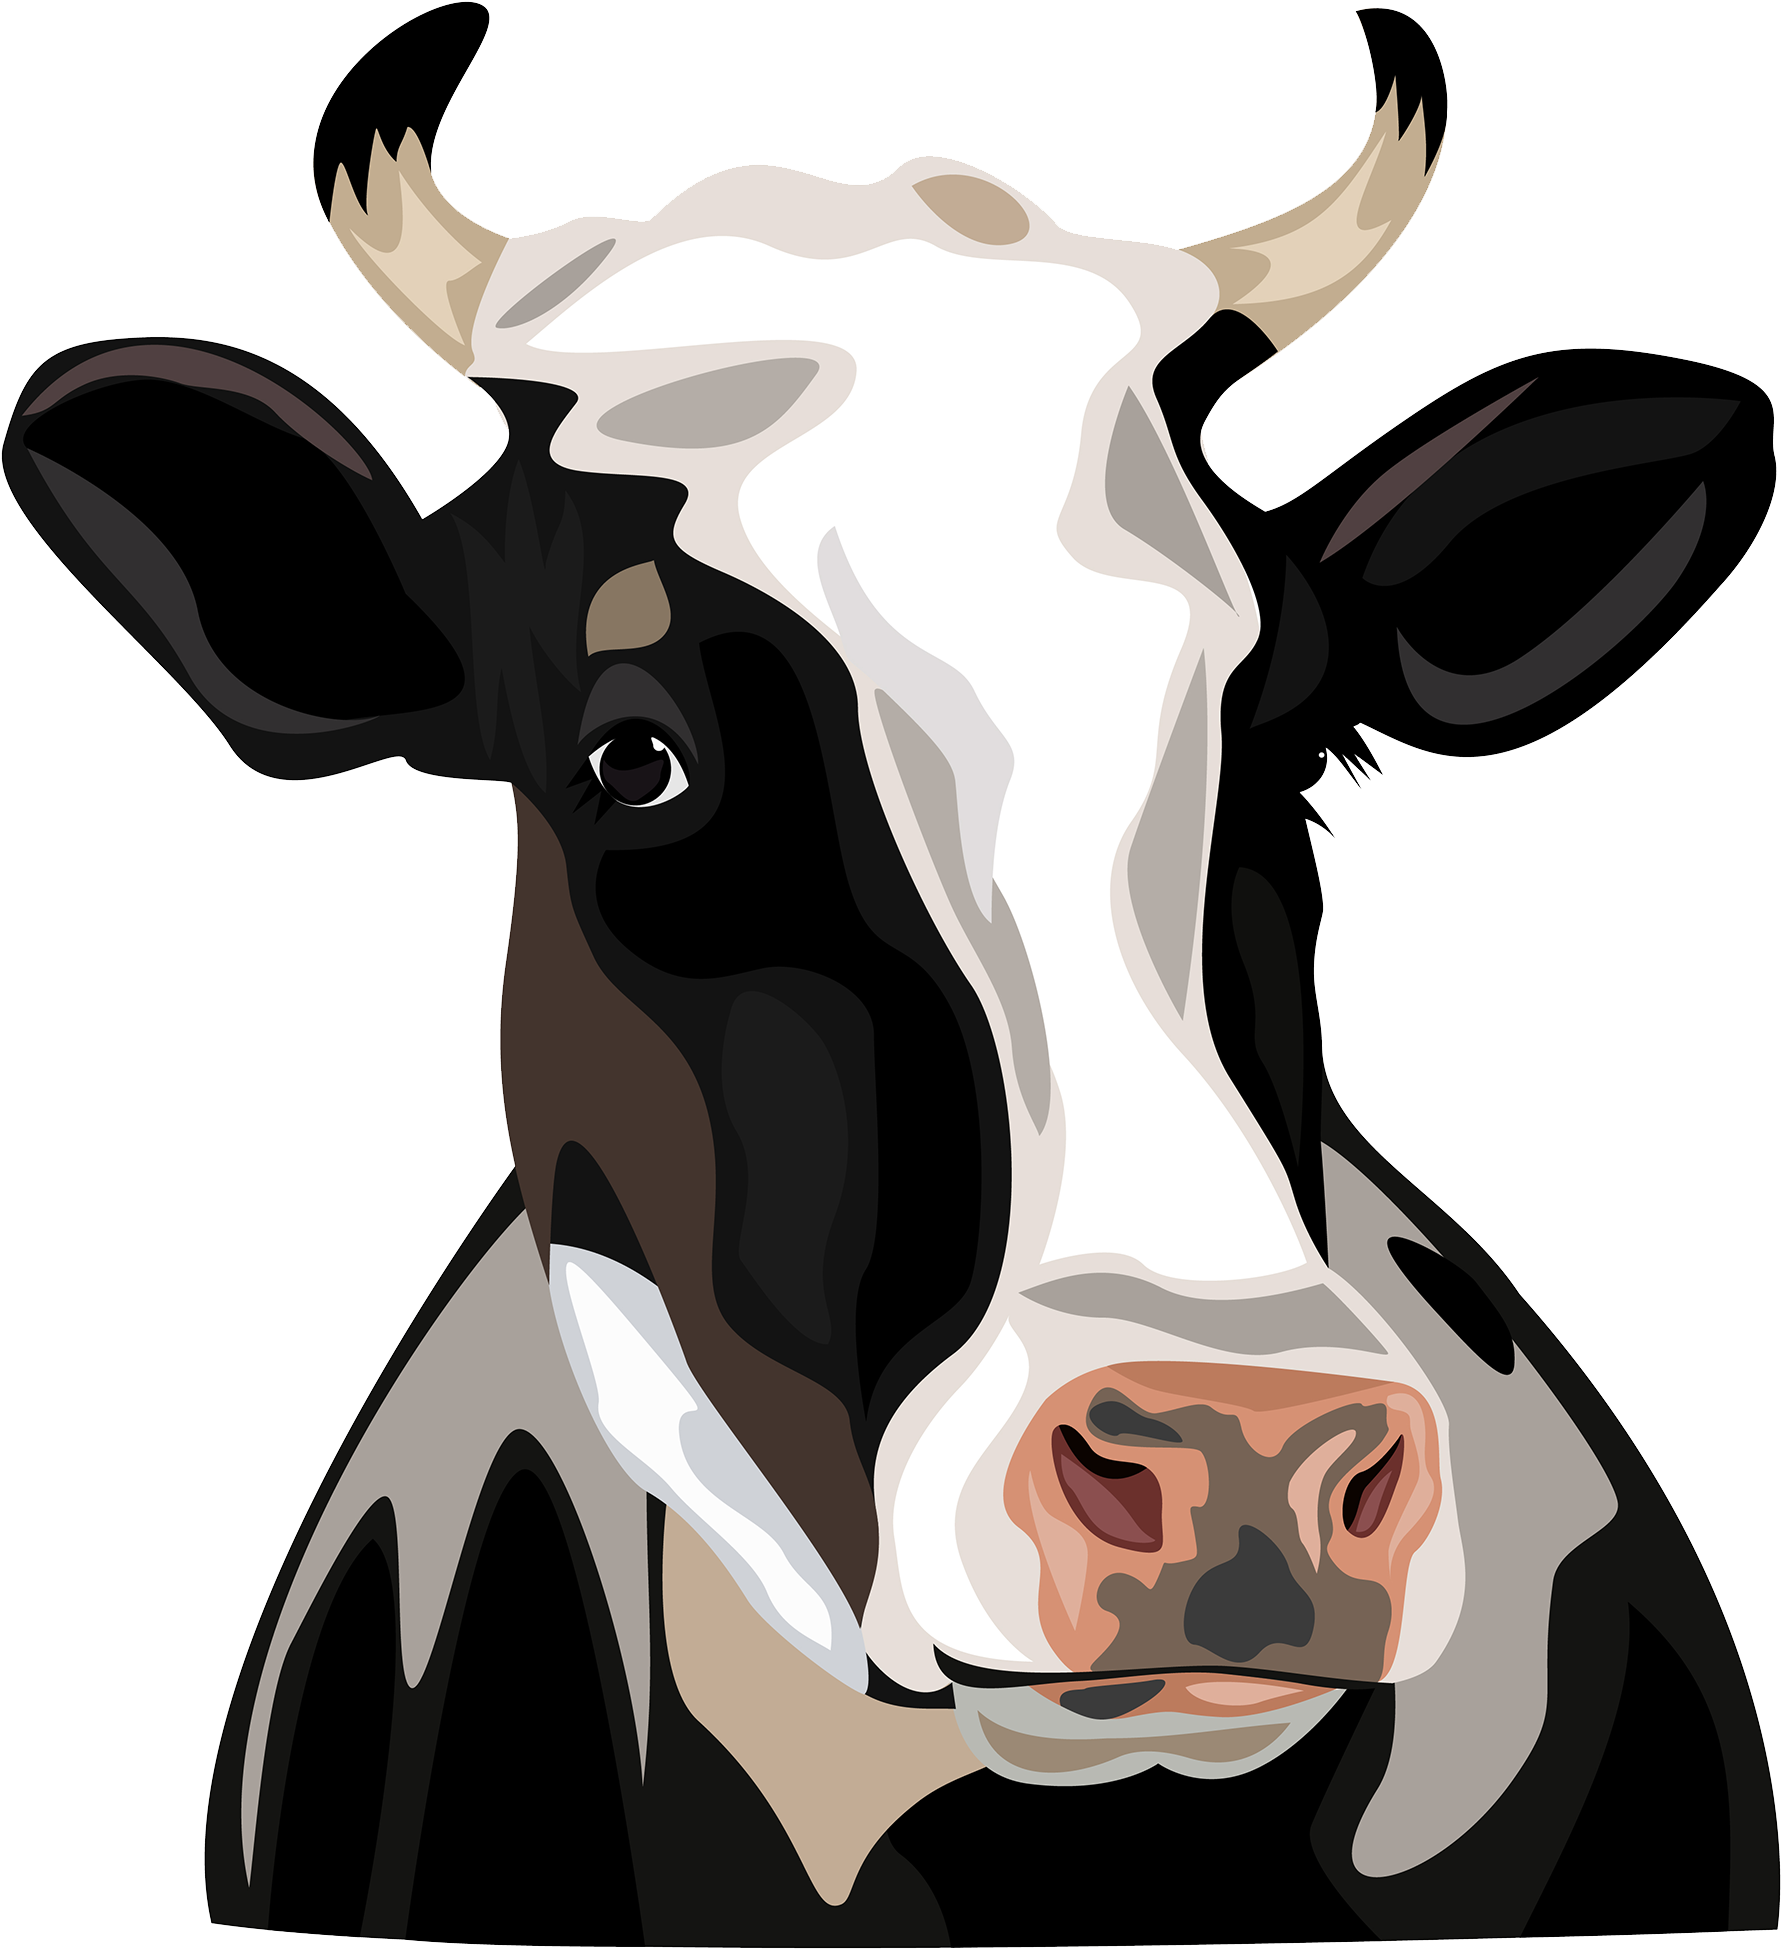 197-1979950_holstein-friesian-cattle-clip-art-holstein-cow-head